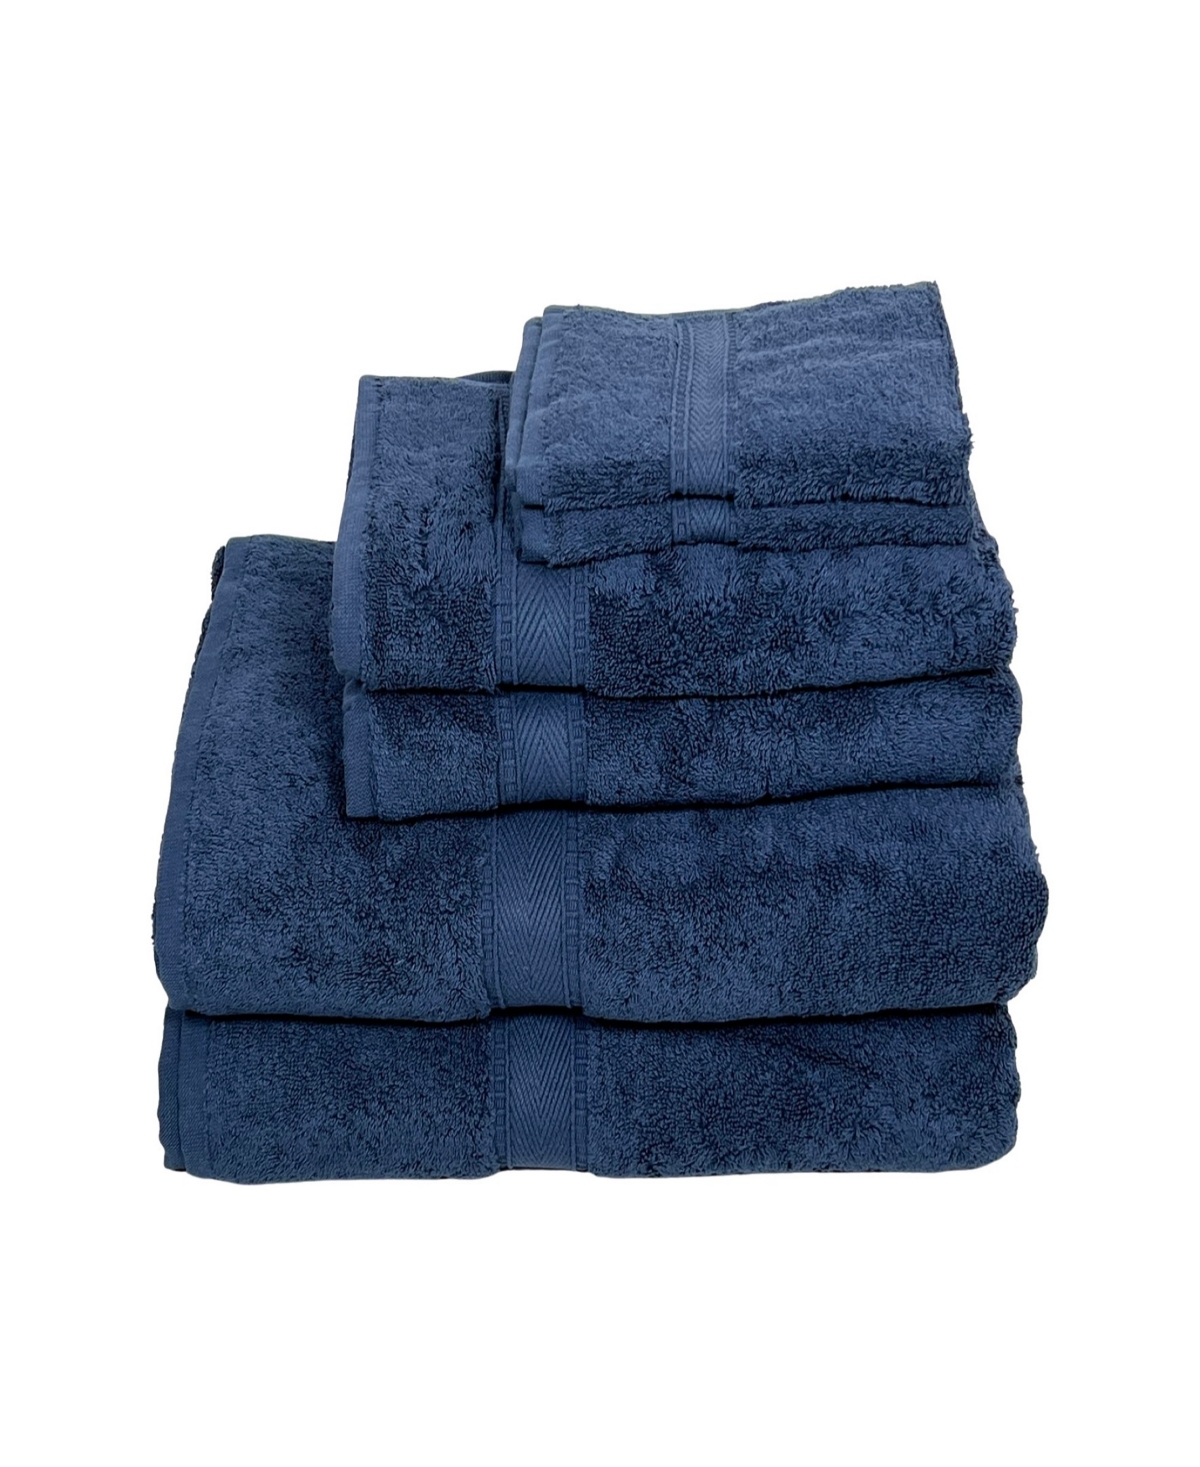 Ozan Premium Home Legend Collection 6 Piece Turkish Cotton Luxury Towel Set Bedding In Navy